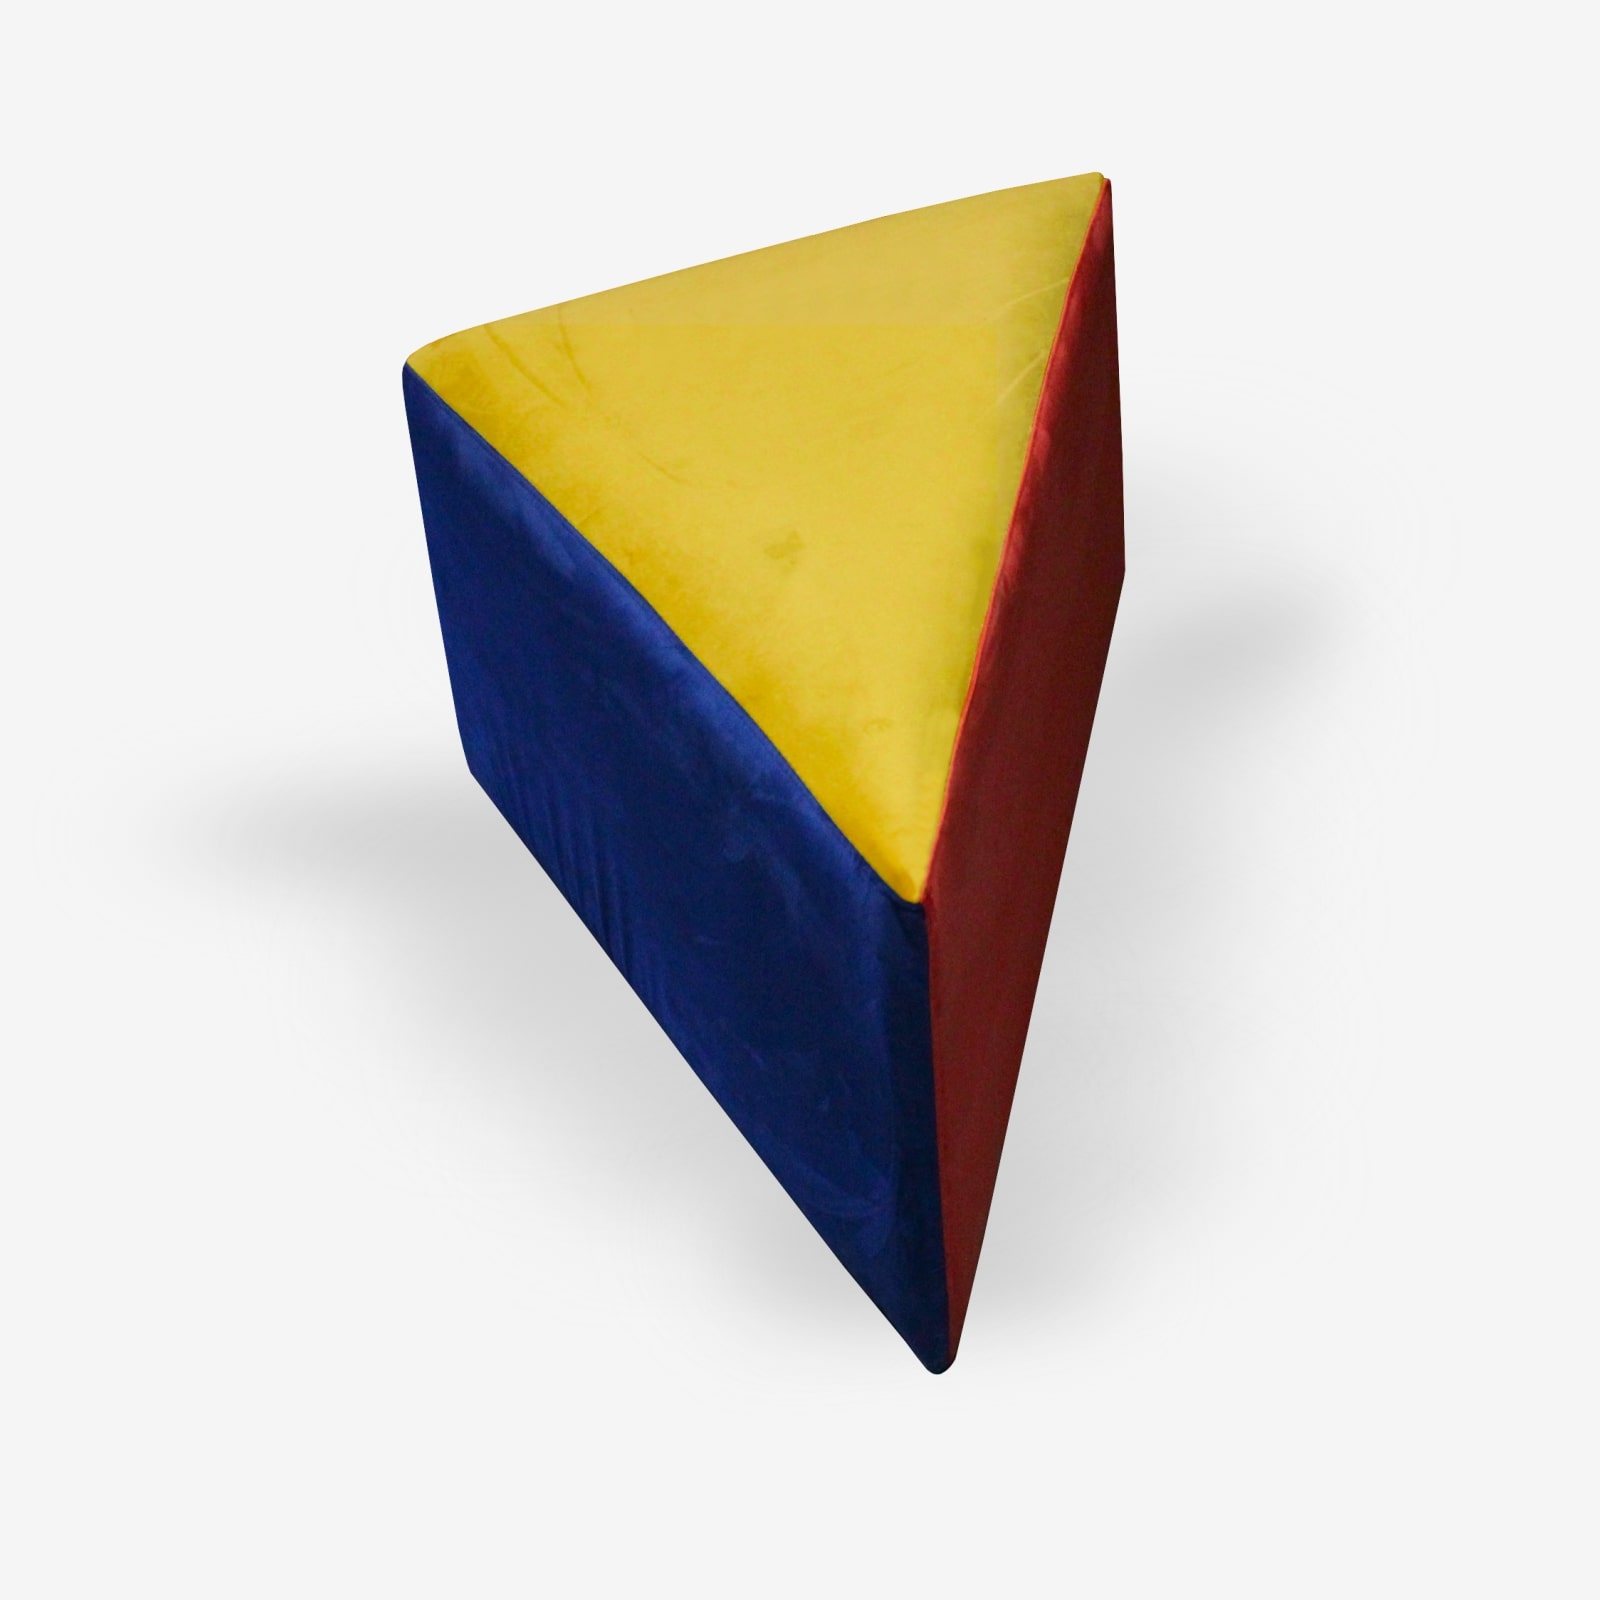 pouf in velluto a triangolo rosso blu giallo per arredamento ristoranti bar alberghi produzione contract pouf